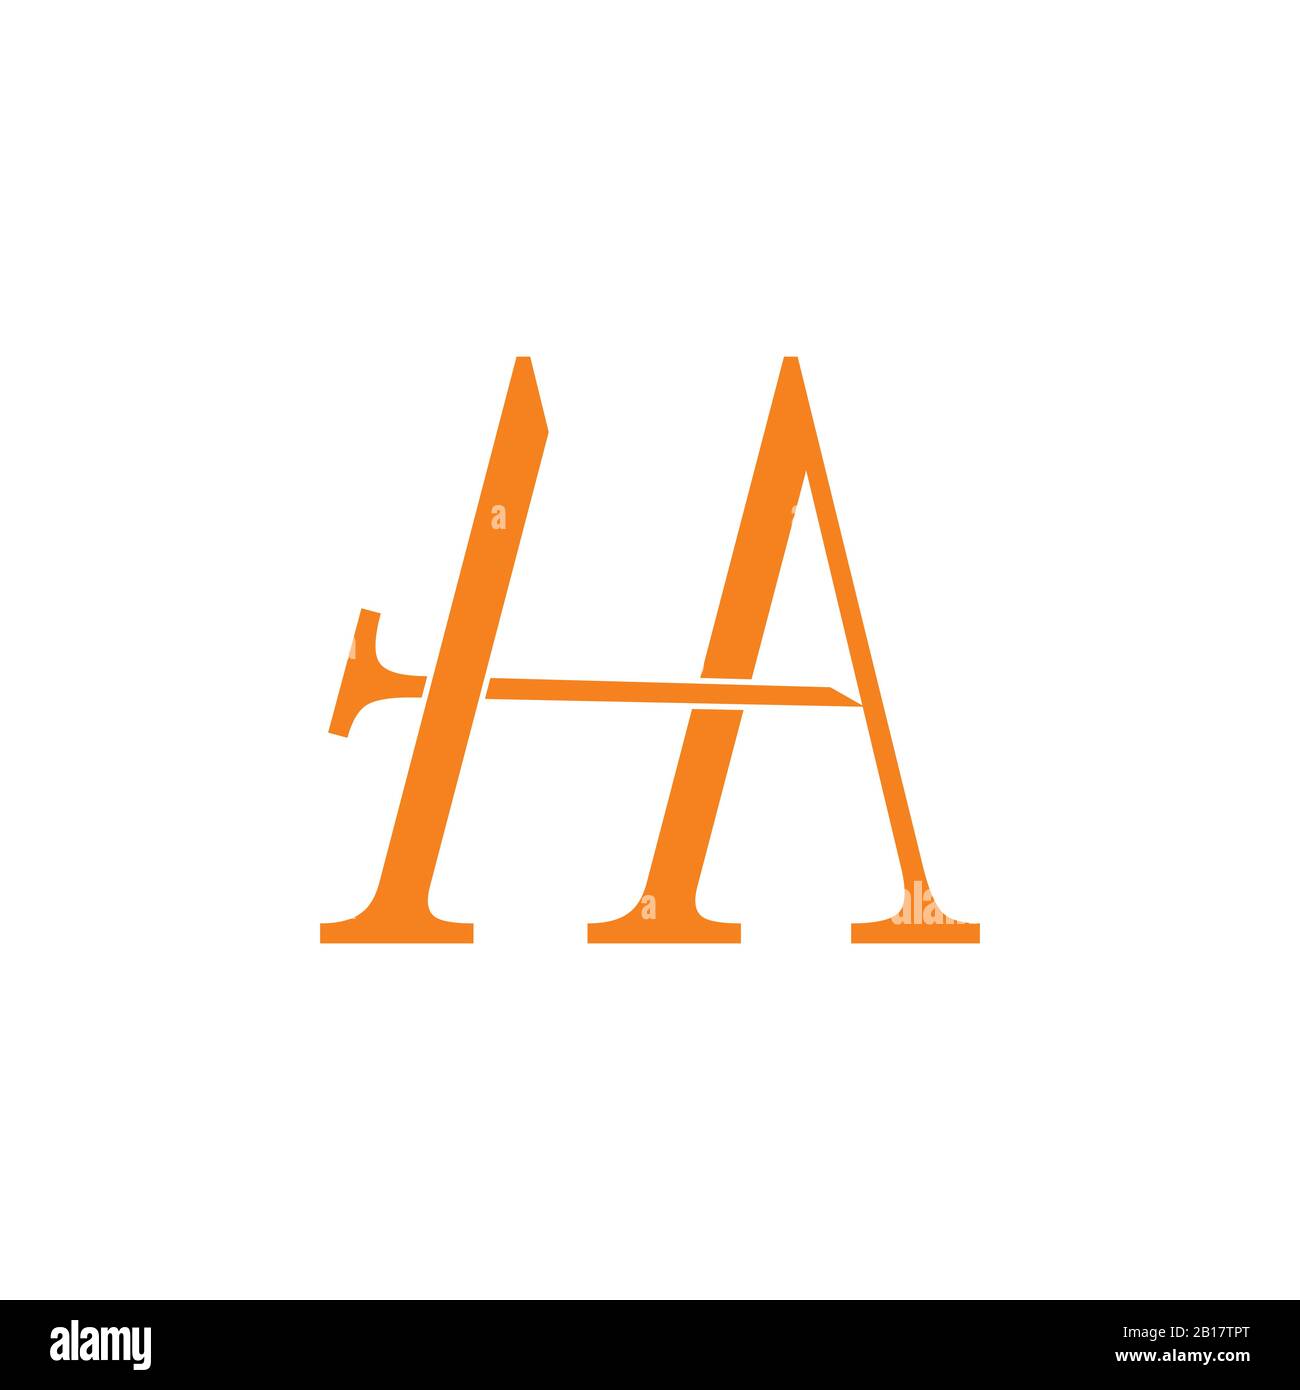 abstract letter ha arrow design logo vector Stock Vector